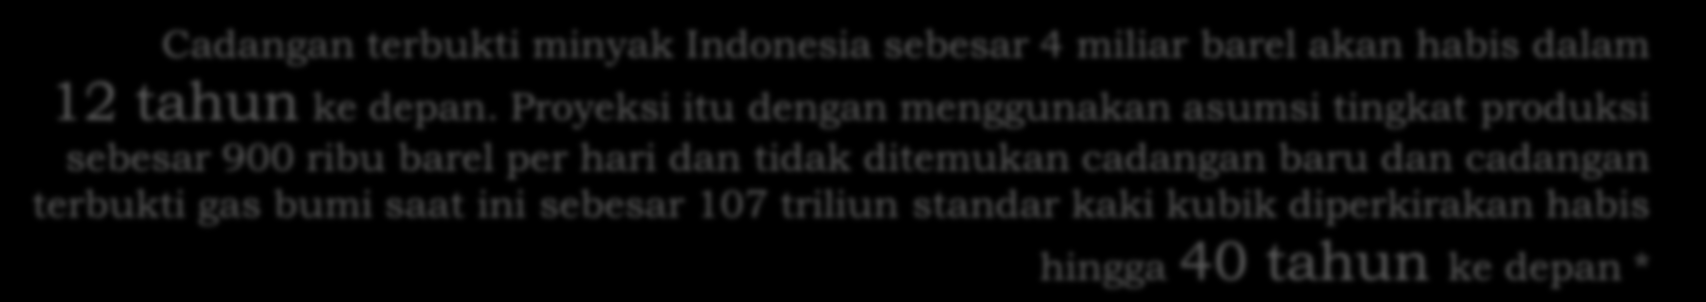 Konservasi/Efisiensi Energi!!! Cadangan terbukti minyak Indonesia sebesar 4 miliar barel akan habis dalam 12 tahun ke depan.